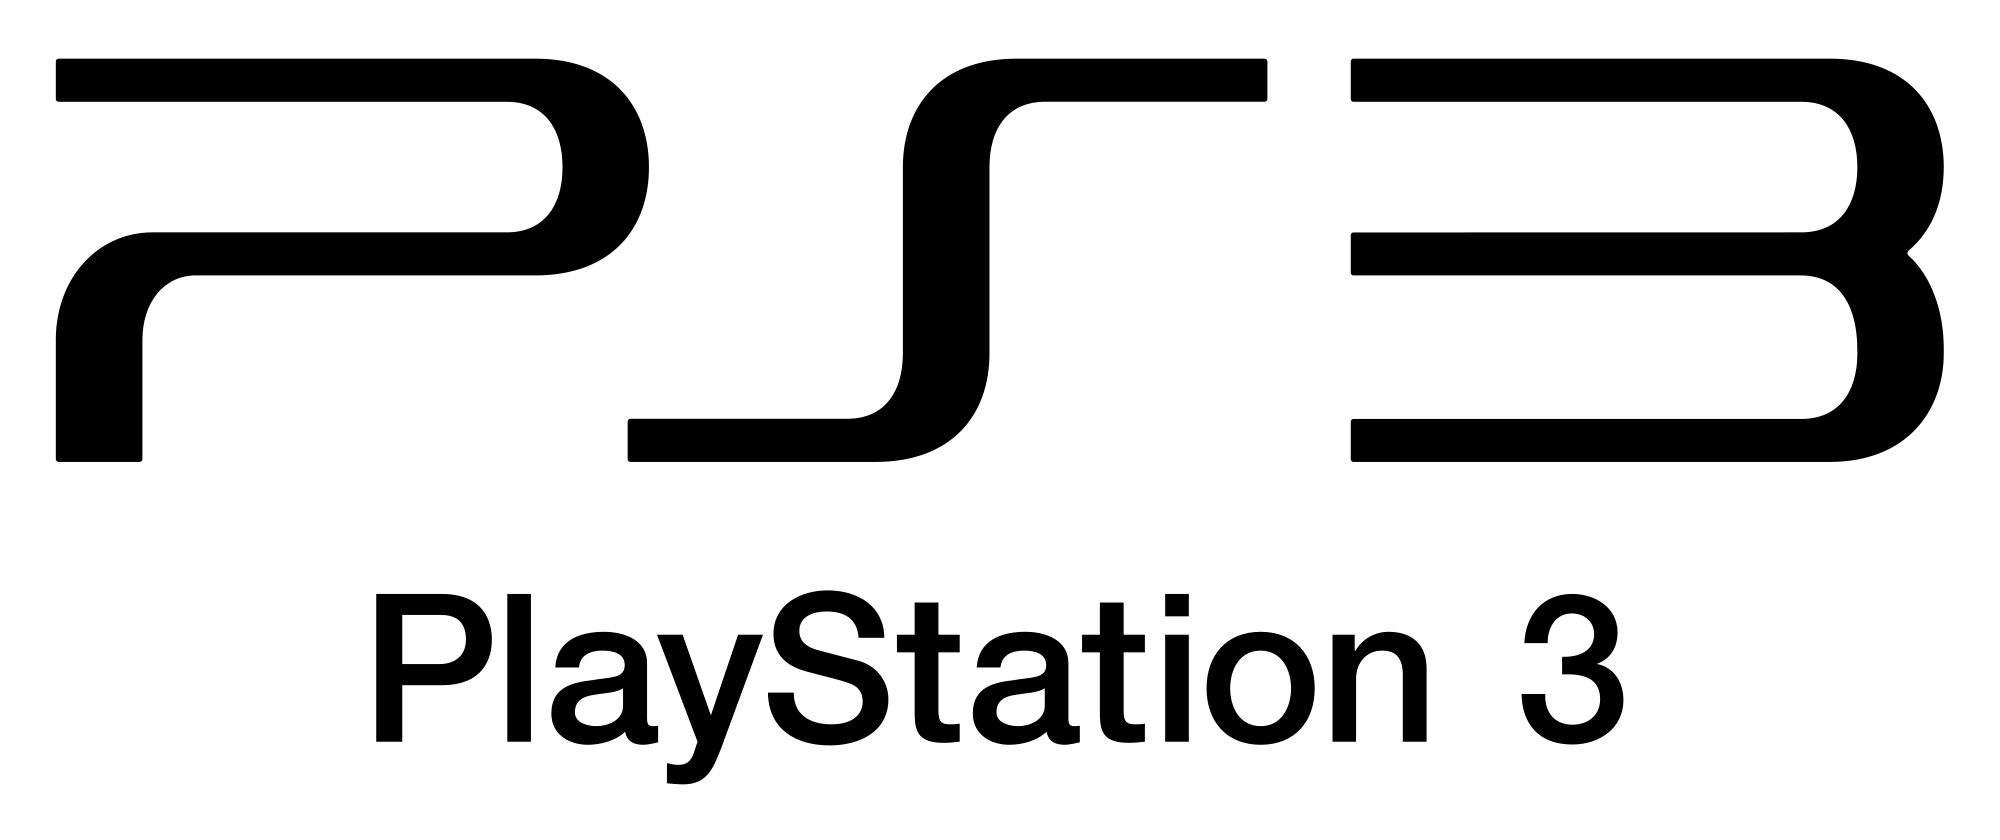 PlayStation 3 Logo - PlayStation 3 Logo neu.svg